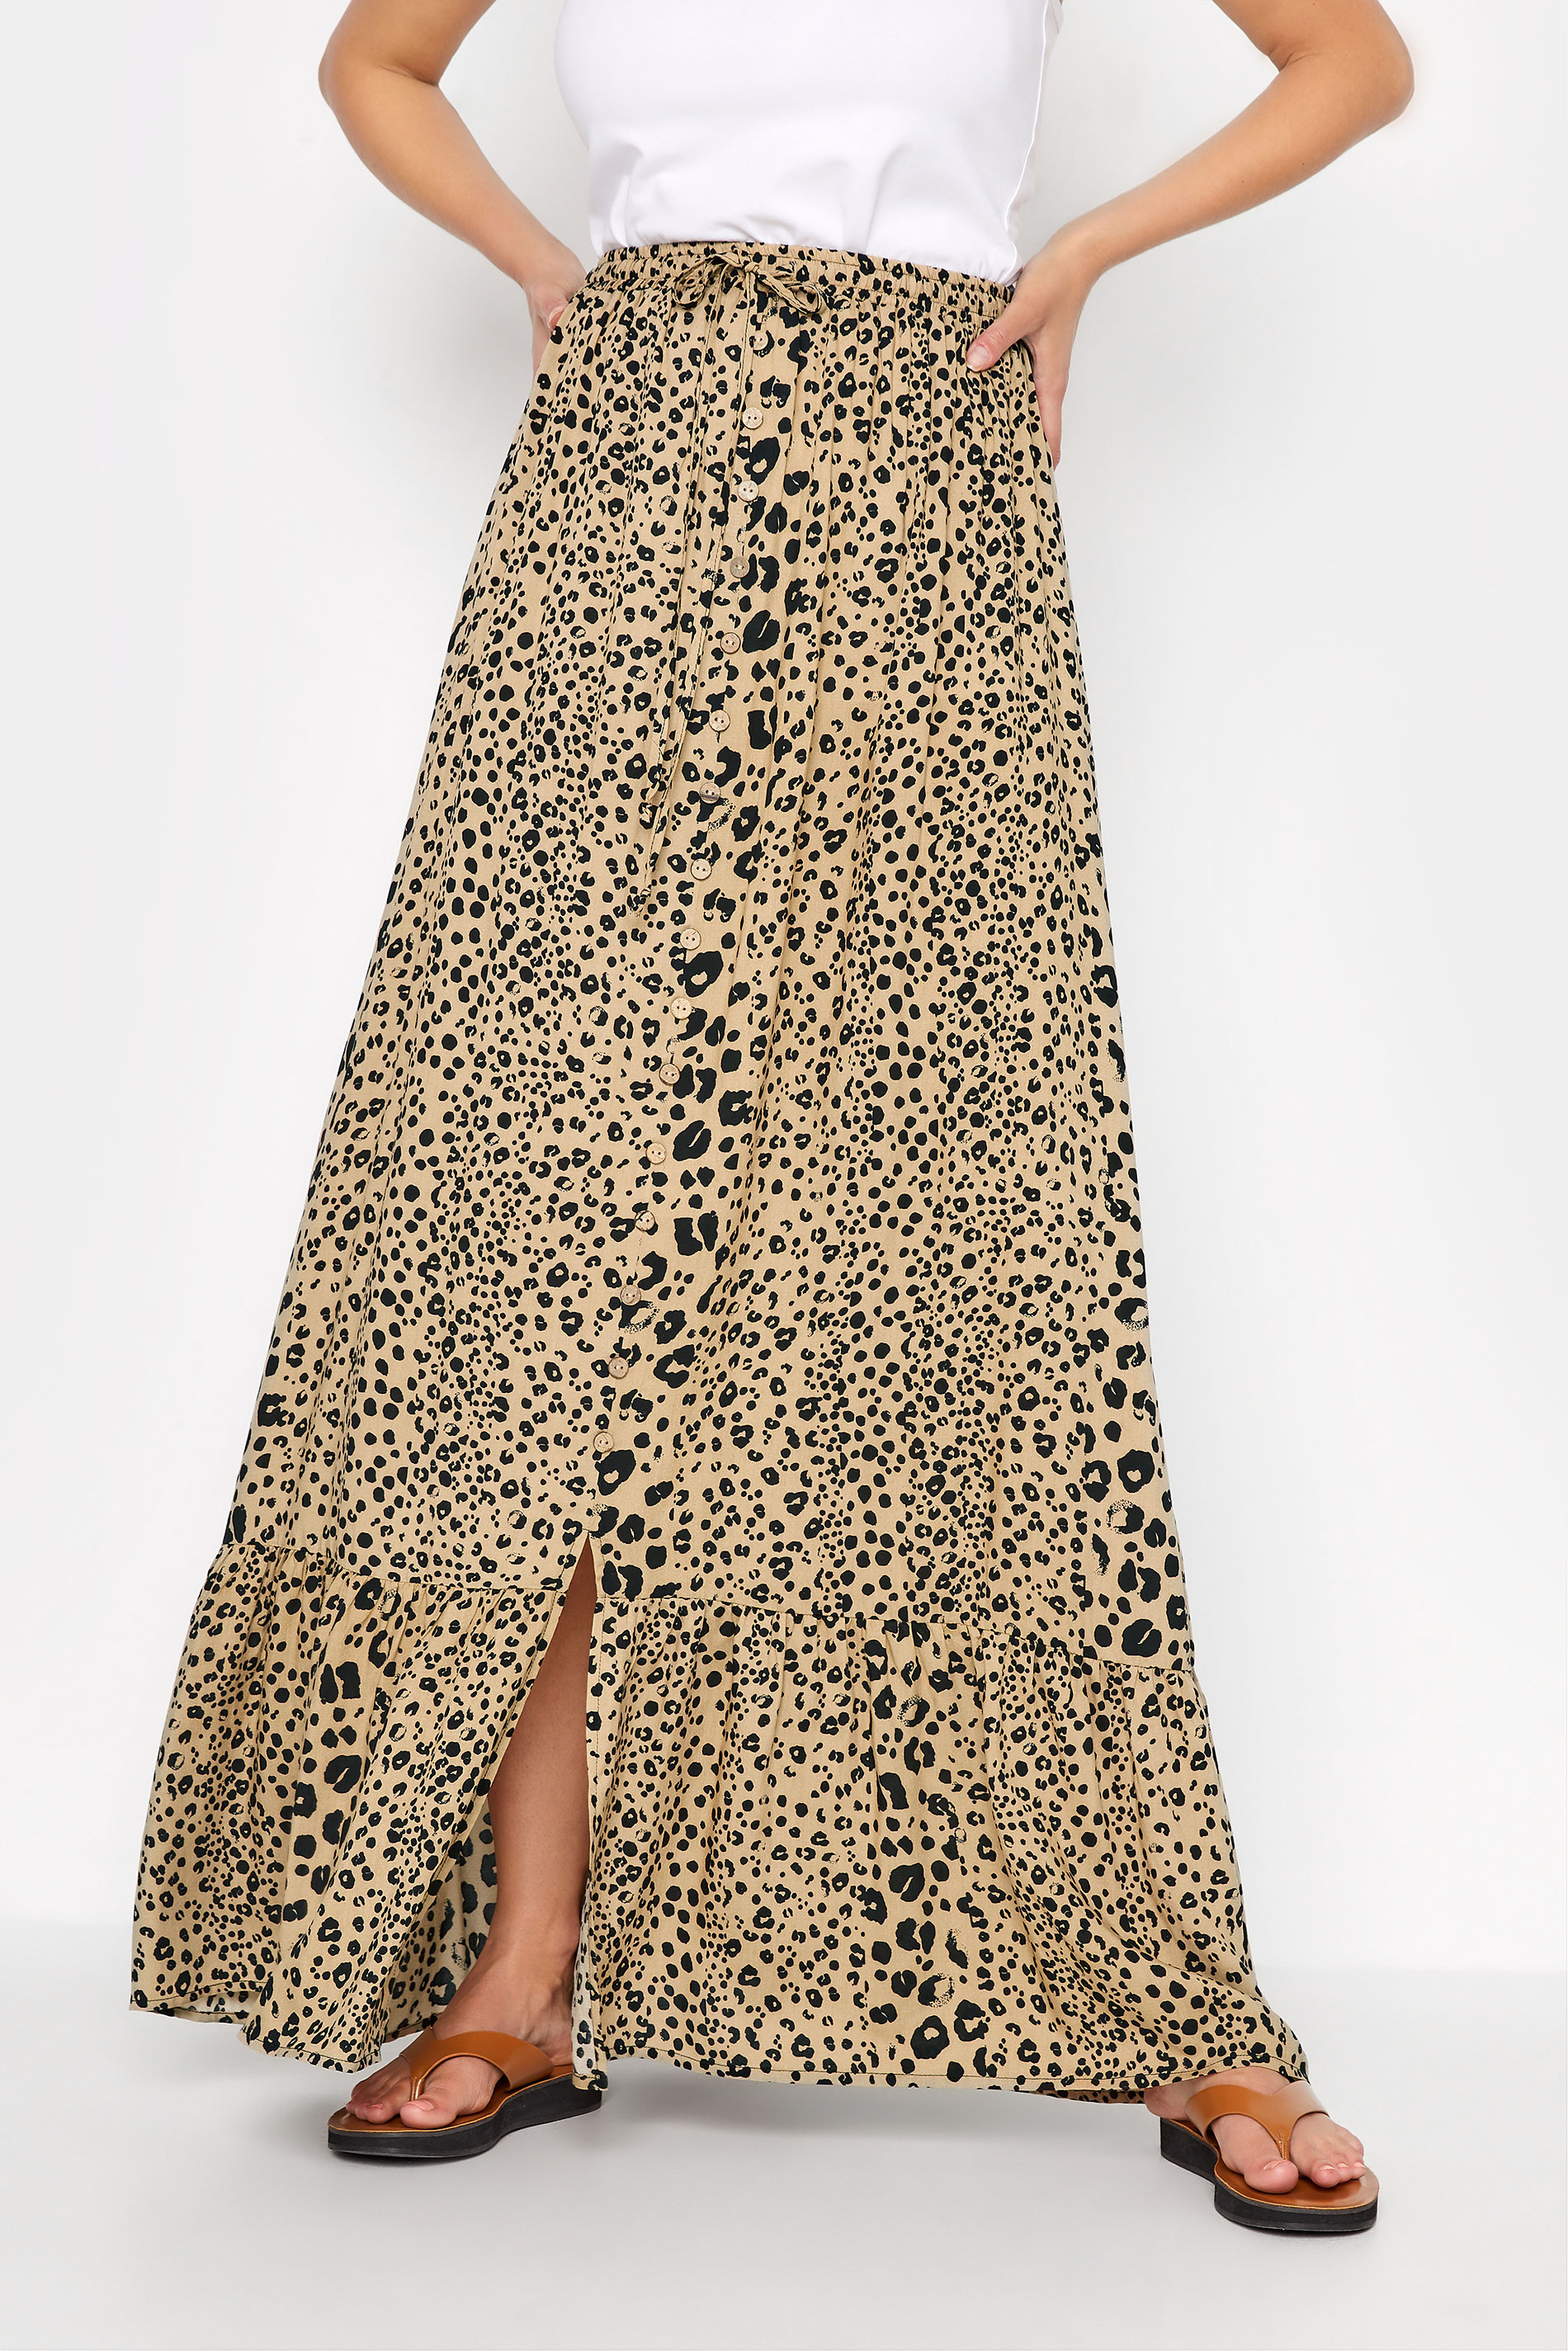 LTS Tall Women's Natural Brown Leopard Print Maxi Skirt | Long Tall Sally 1